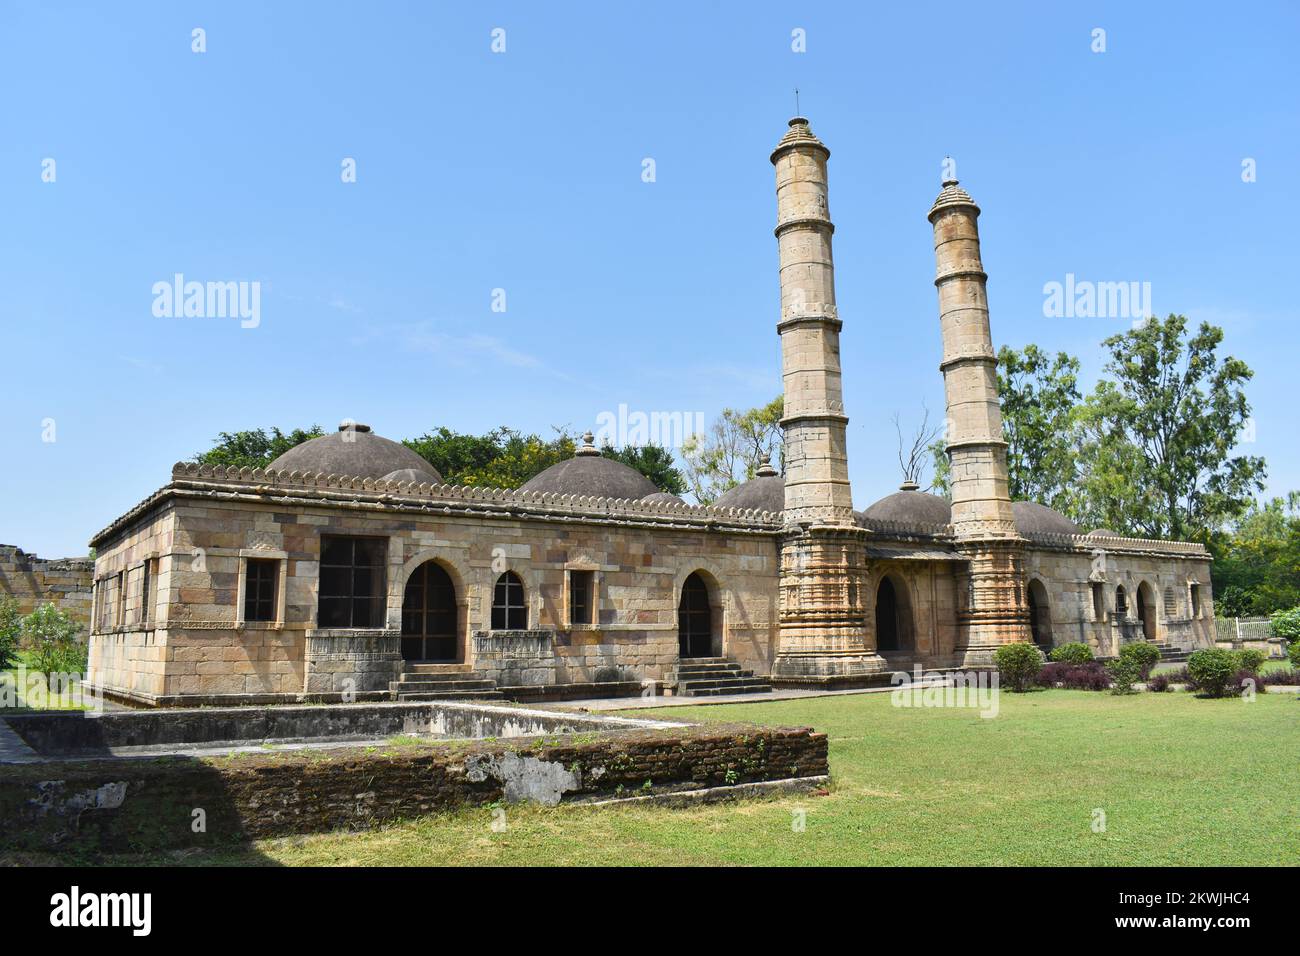 Rückblick auf Shaher ki Masjid, islamische religiöse Architektur, erbaut von Sultan Mahmud Begada aus dem 15.. Bis 16.. Jahrhundert. Ein UNESCO-Weltkulturerbe in Stockfoto